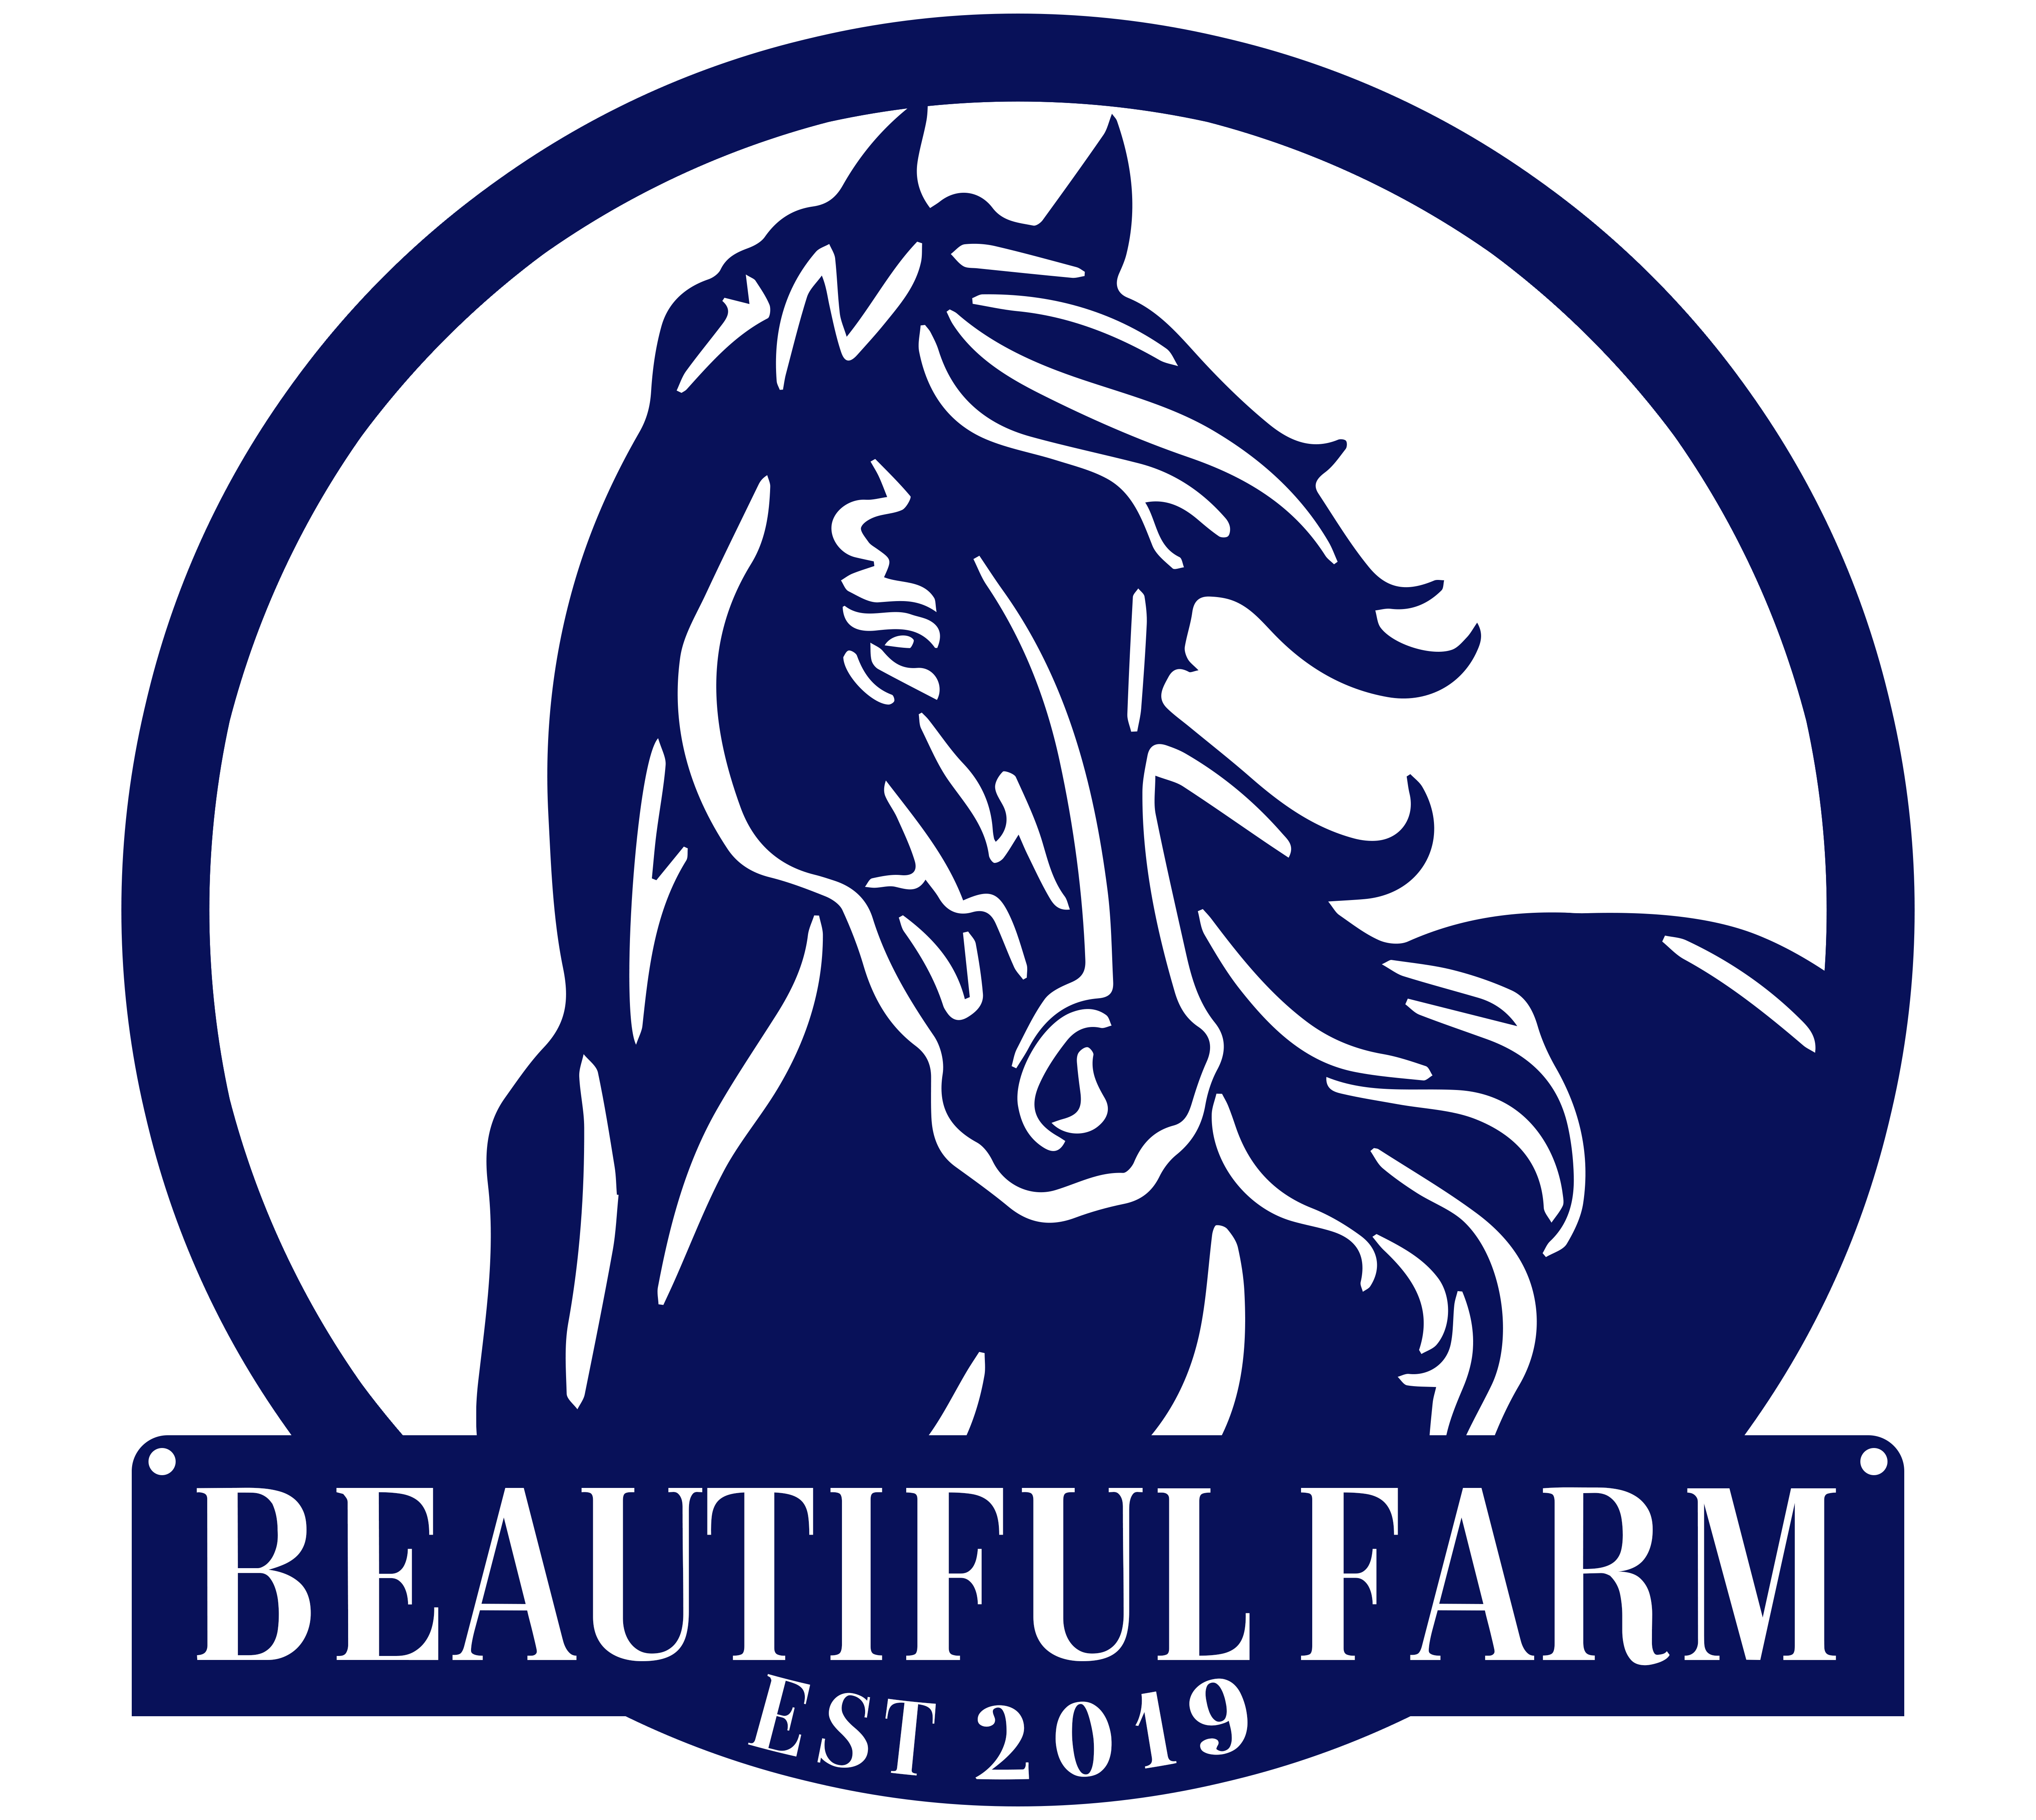 Our BEAUtiful Farm